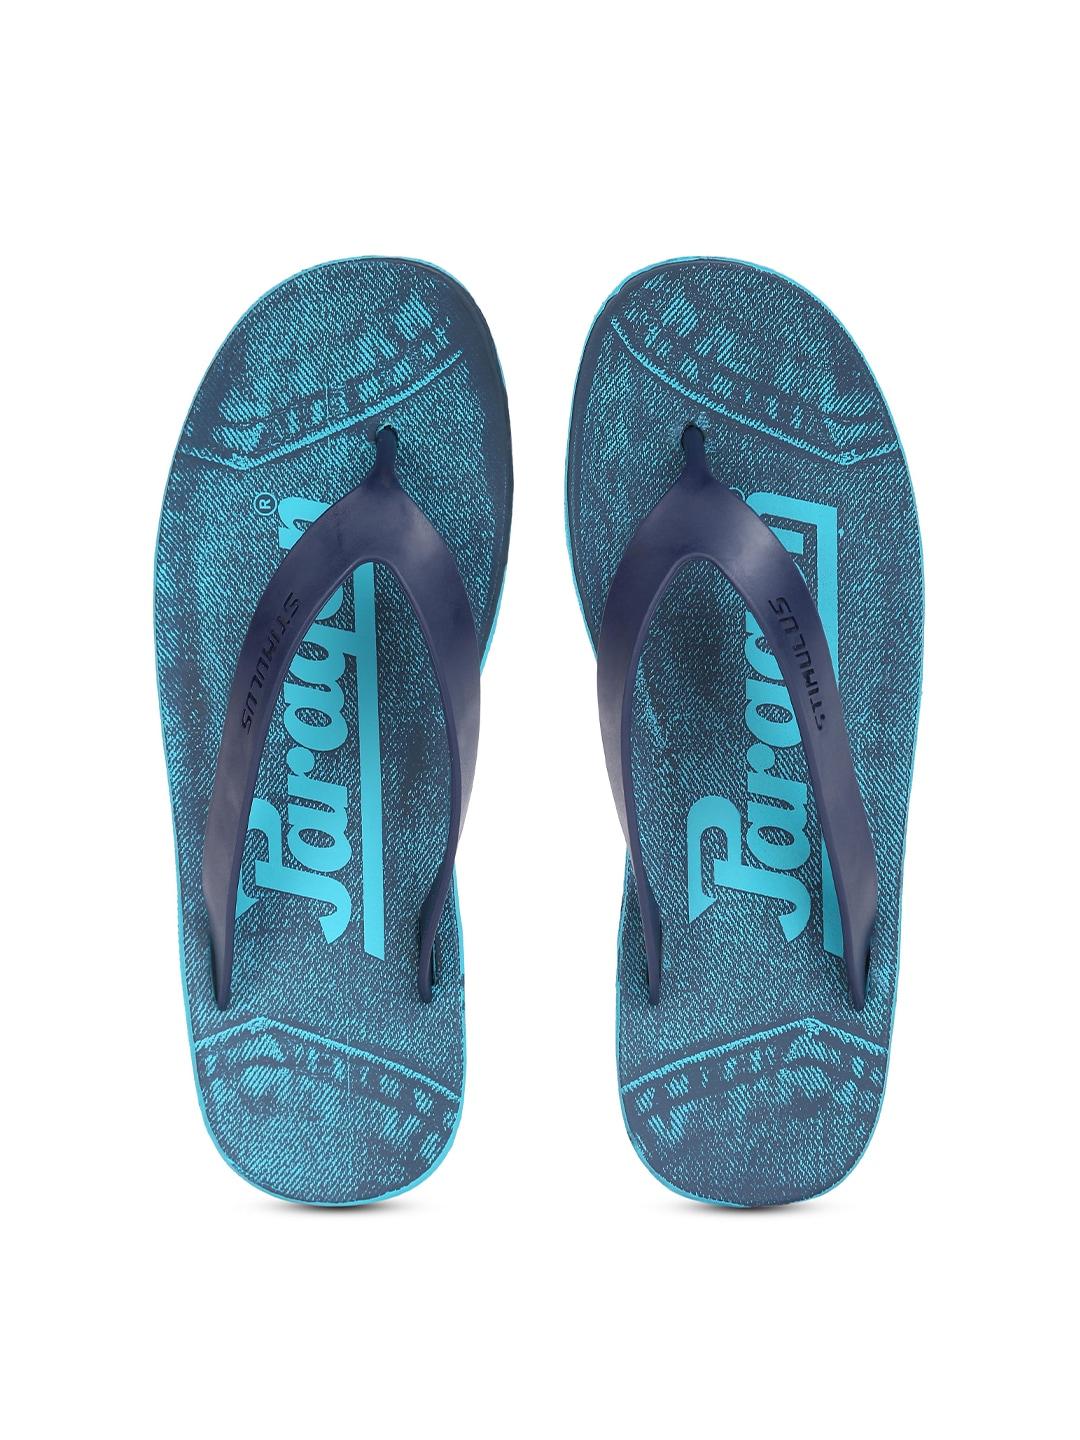 paragon-stimulus-men-blue-printed-thong-flip-flops